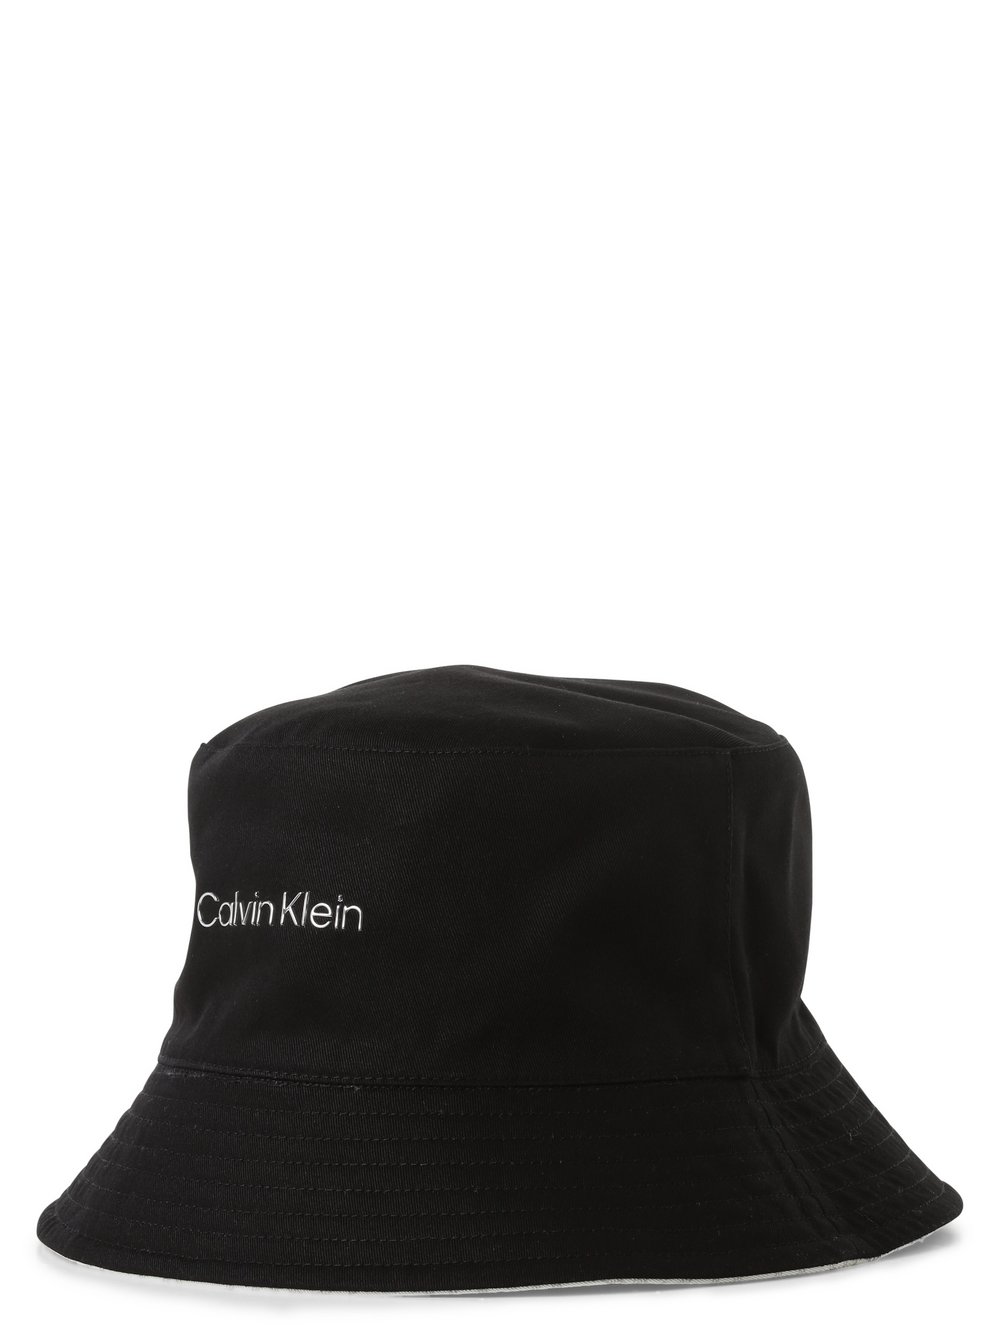 Calvin Klein - Damski bucket hat z dwustronnym wzorem, czarny|biały